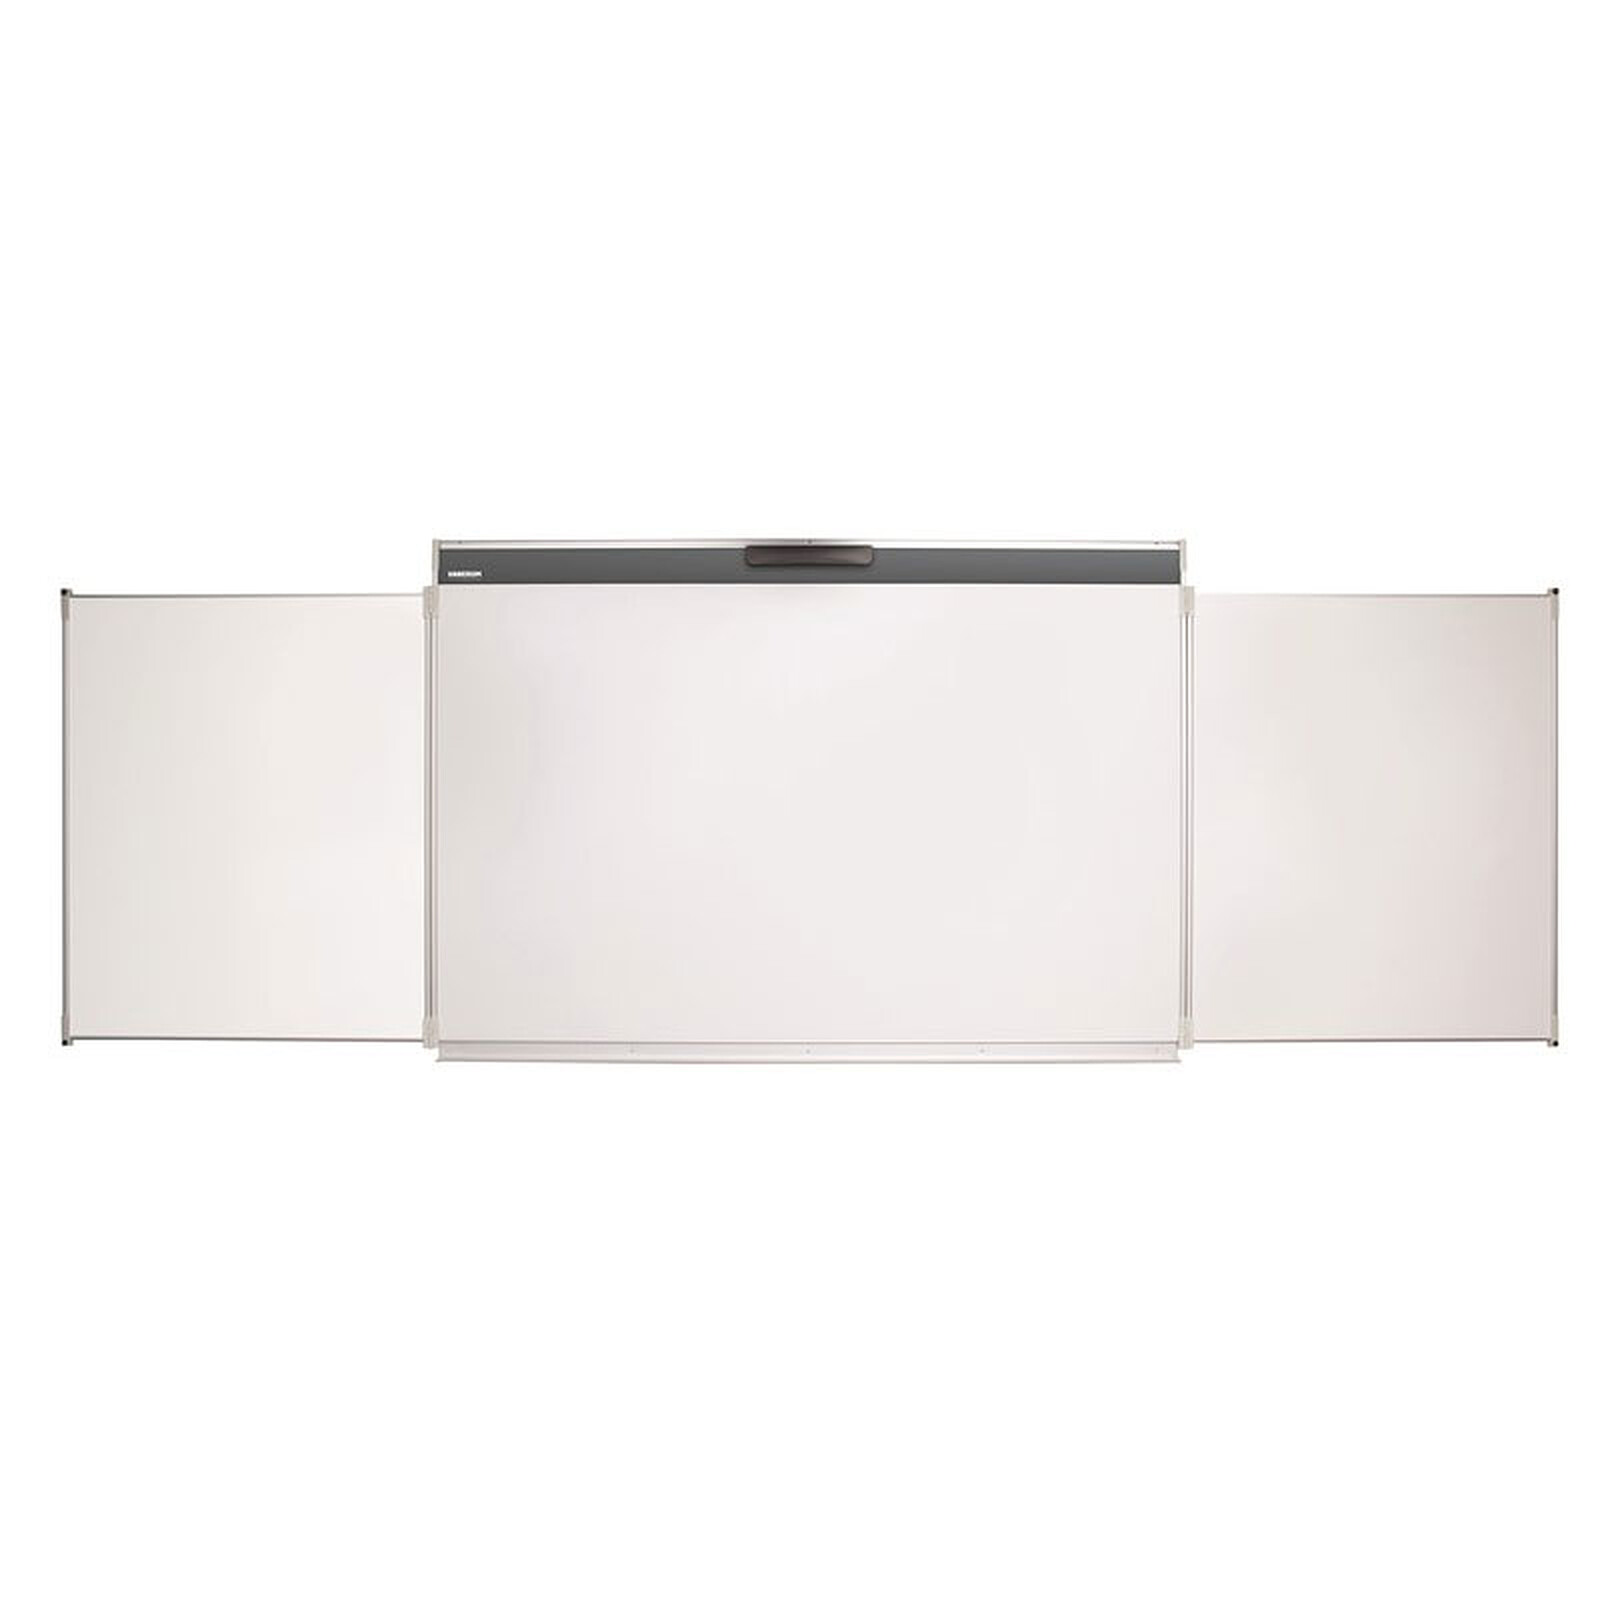 Rouleau adhésif Velleda blanc 100 x 200 cm - Tableaux, panneaux